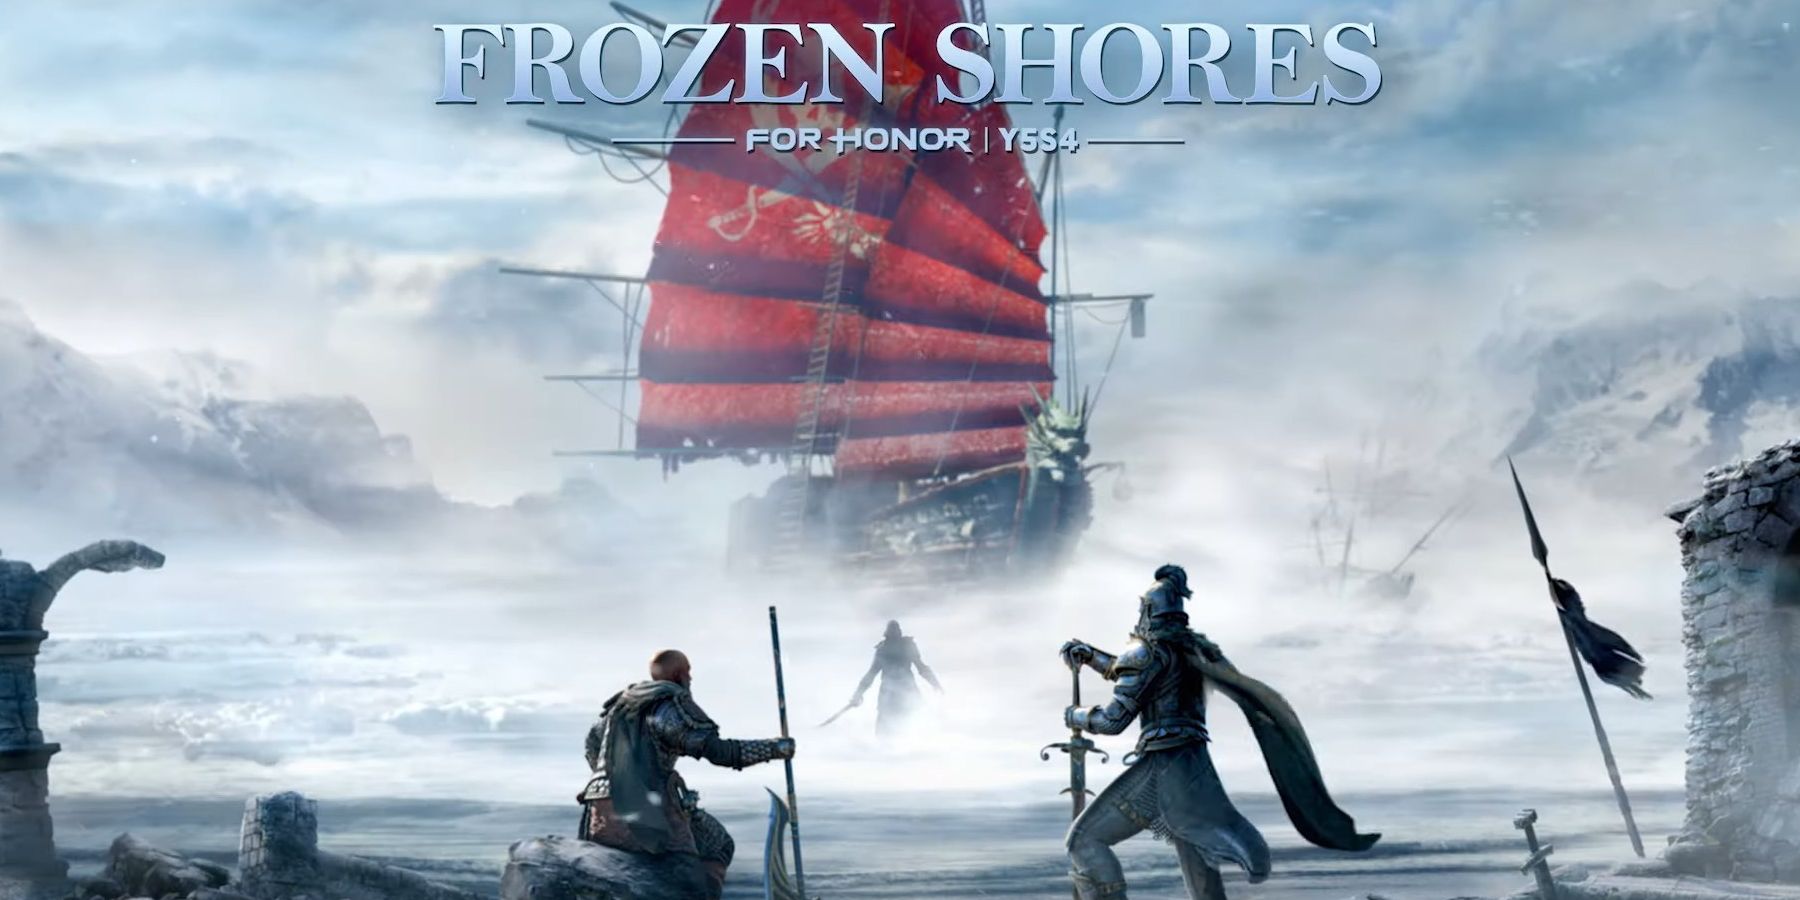 for-honor-frozen-shores-update-trailer